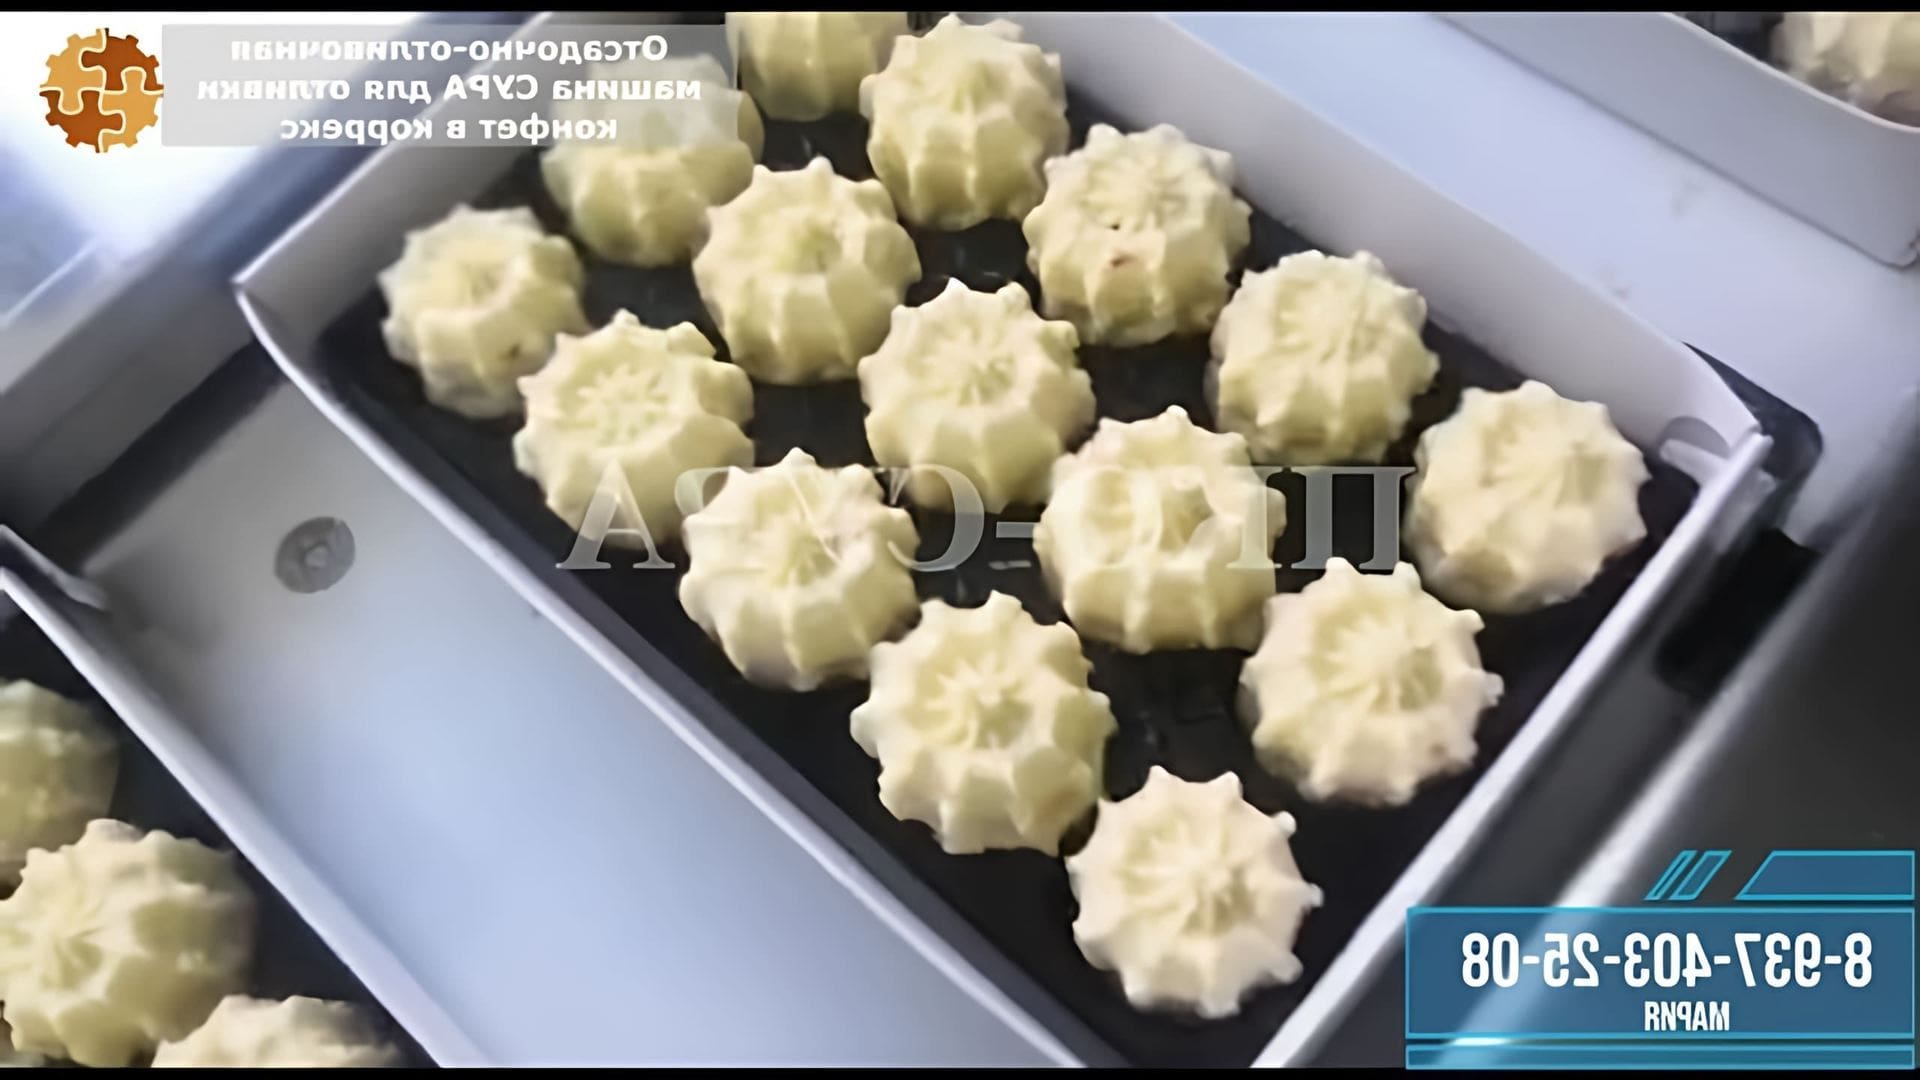 В данном видео-ролике будет показан процесс отливки помадных конфет (сливочная помадка) в коррекс